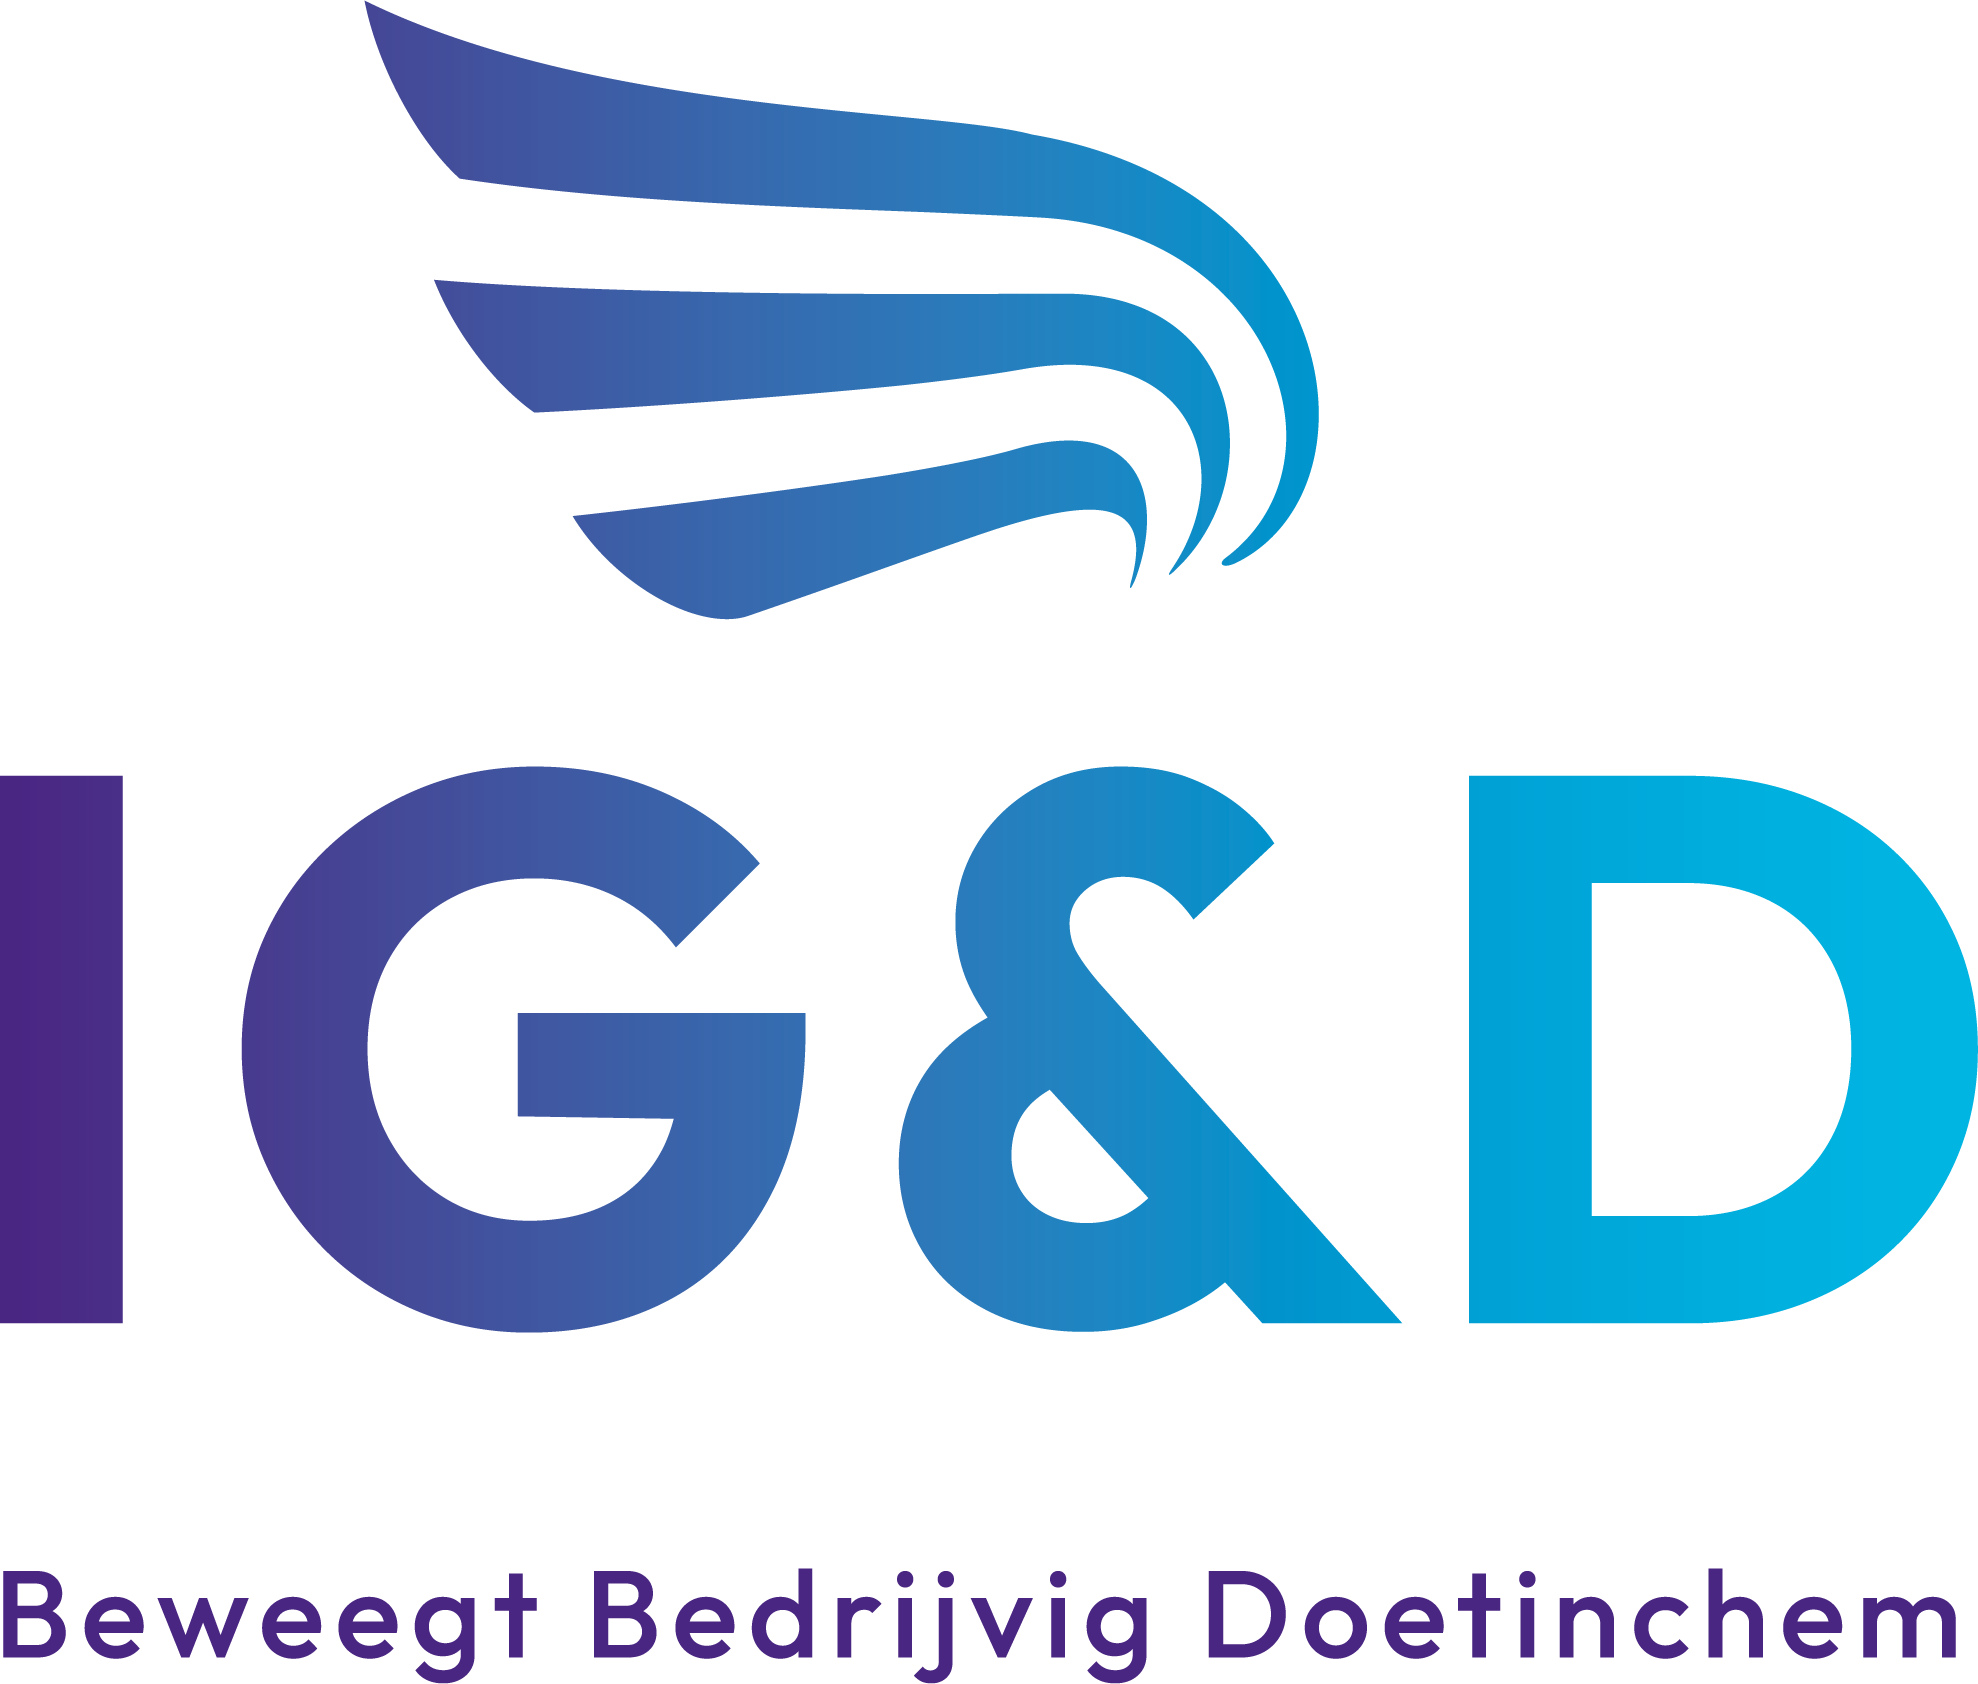 IG&D Doetinchem